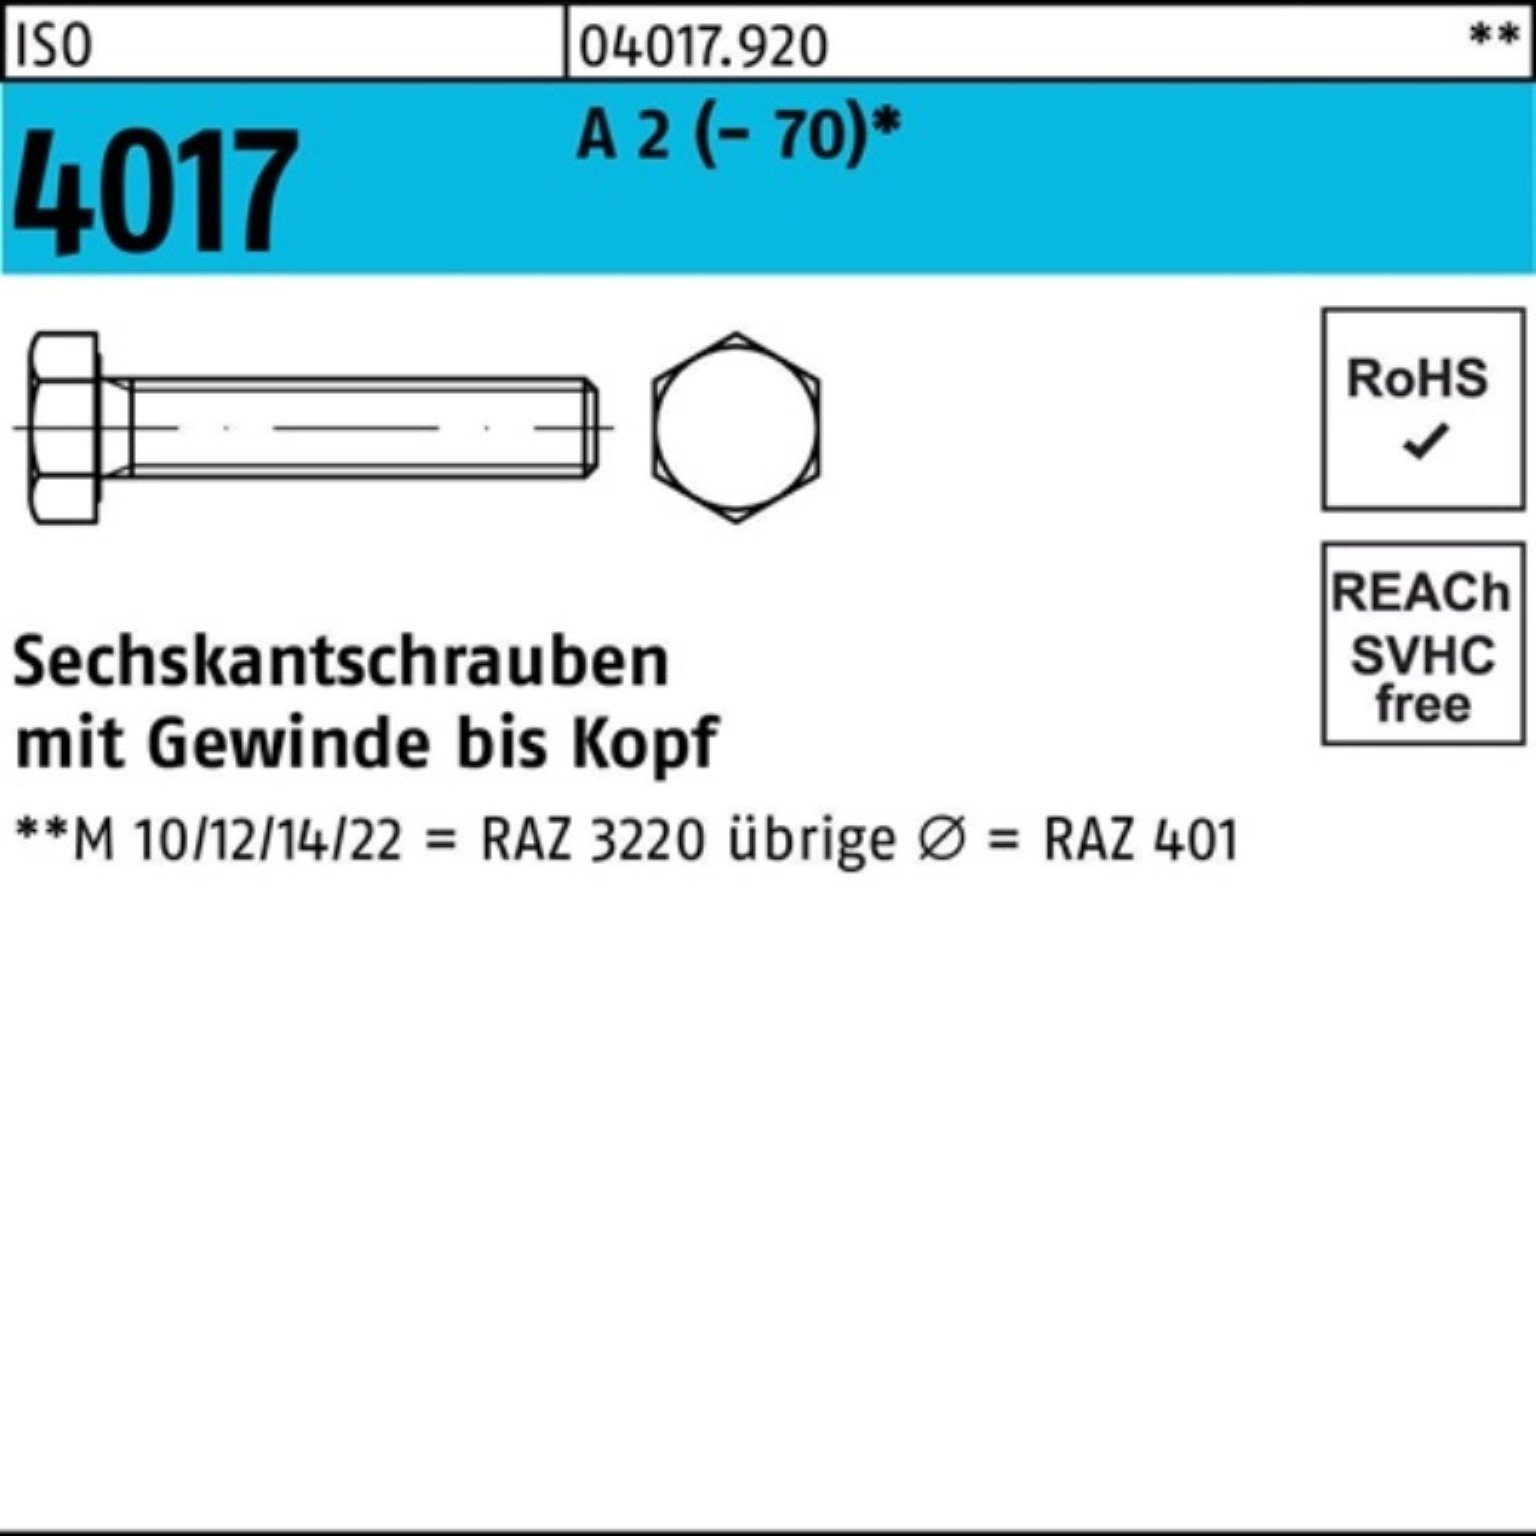 A 2 Stück VG Pack 4017 ISO Bufab 1 150 100er M10x Sechskantschraube (70) Sechskantschraube